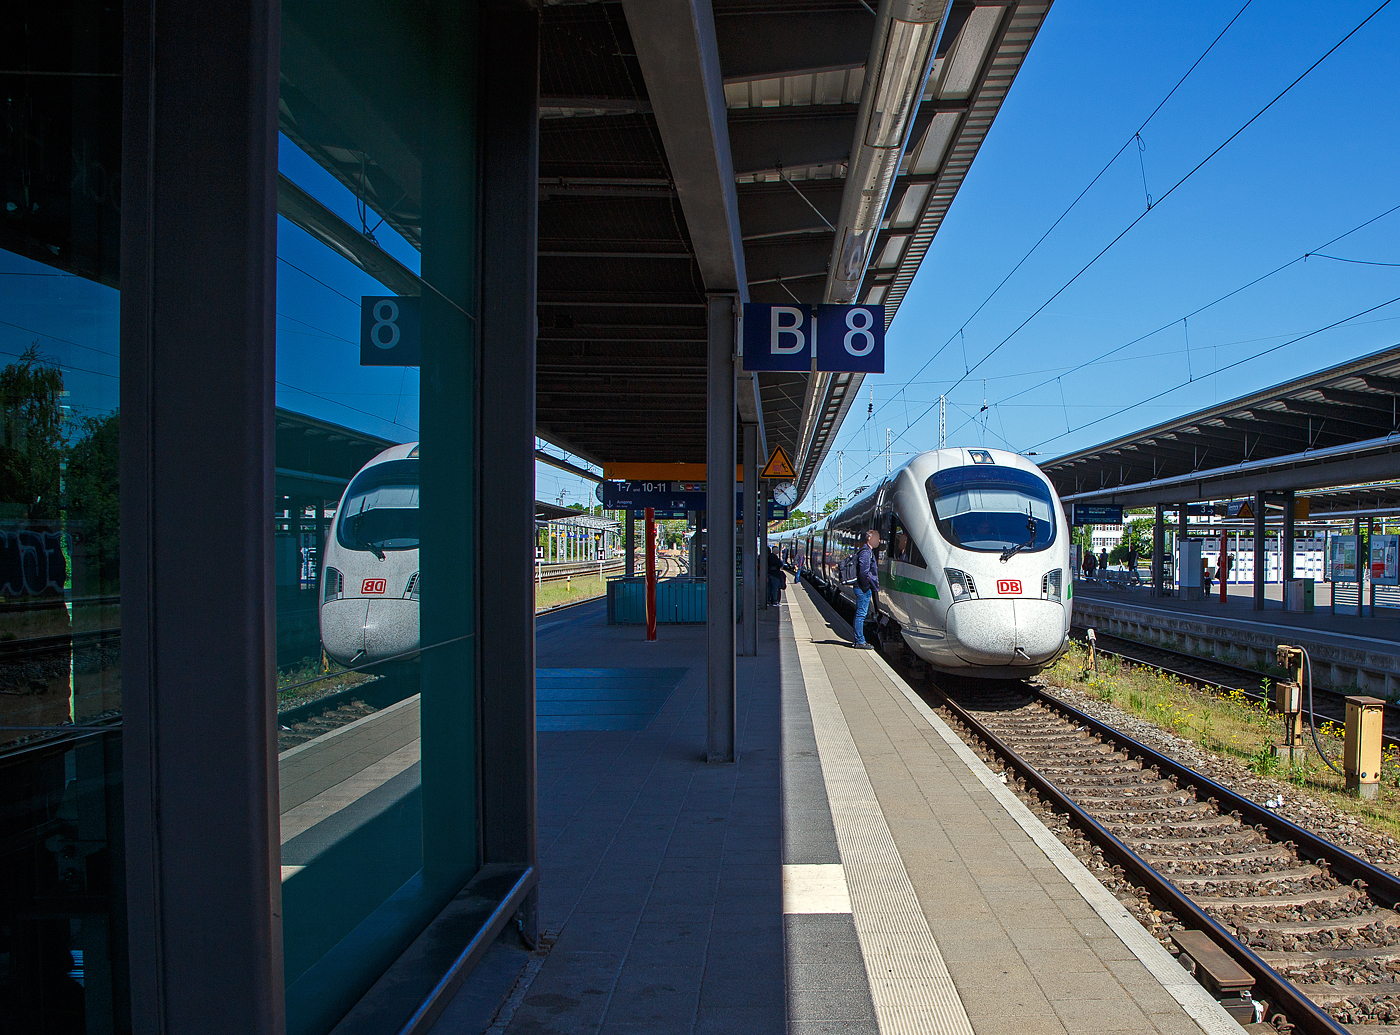 Der 7-teilige ICE T (BR 411) Tz 1160 „Markt Holzkirchen“ 411 060-7 / 411 560-6 (93 80 5411 060-7 D-DB / 93 80 5411 560-6 D-DB) hat am 15.05.2022, als ICE 1671 (Ostseebad Binz - Hannover Hbf - Karlsruhe Hbf) den Hauptbahnhof Rostock erreicht, Kopf gemacht und steht nun zur Weiterfahrt bereit.